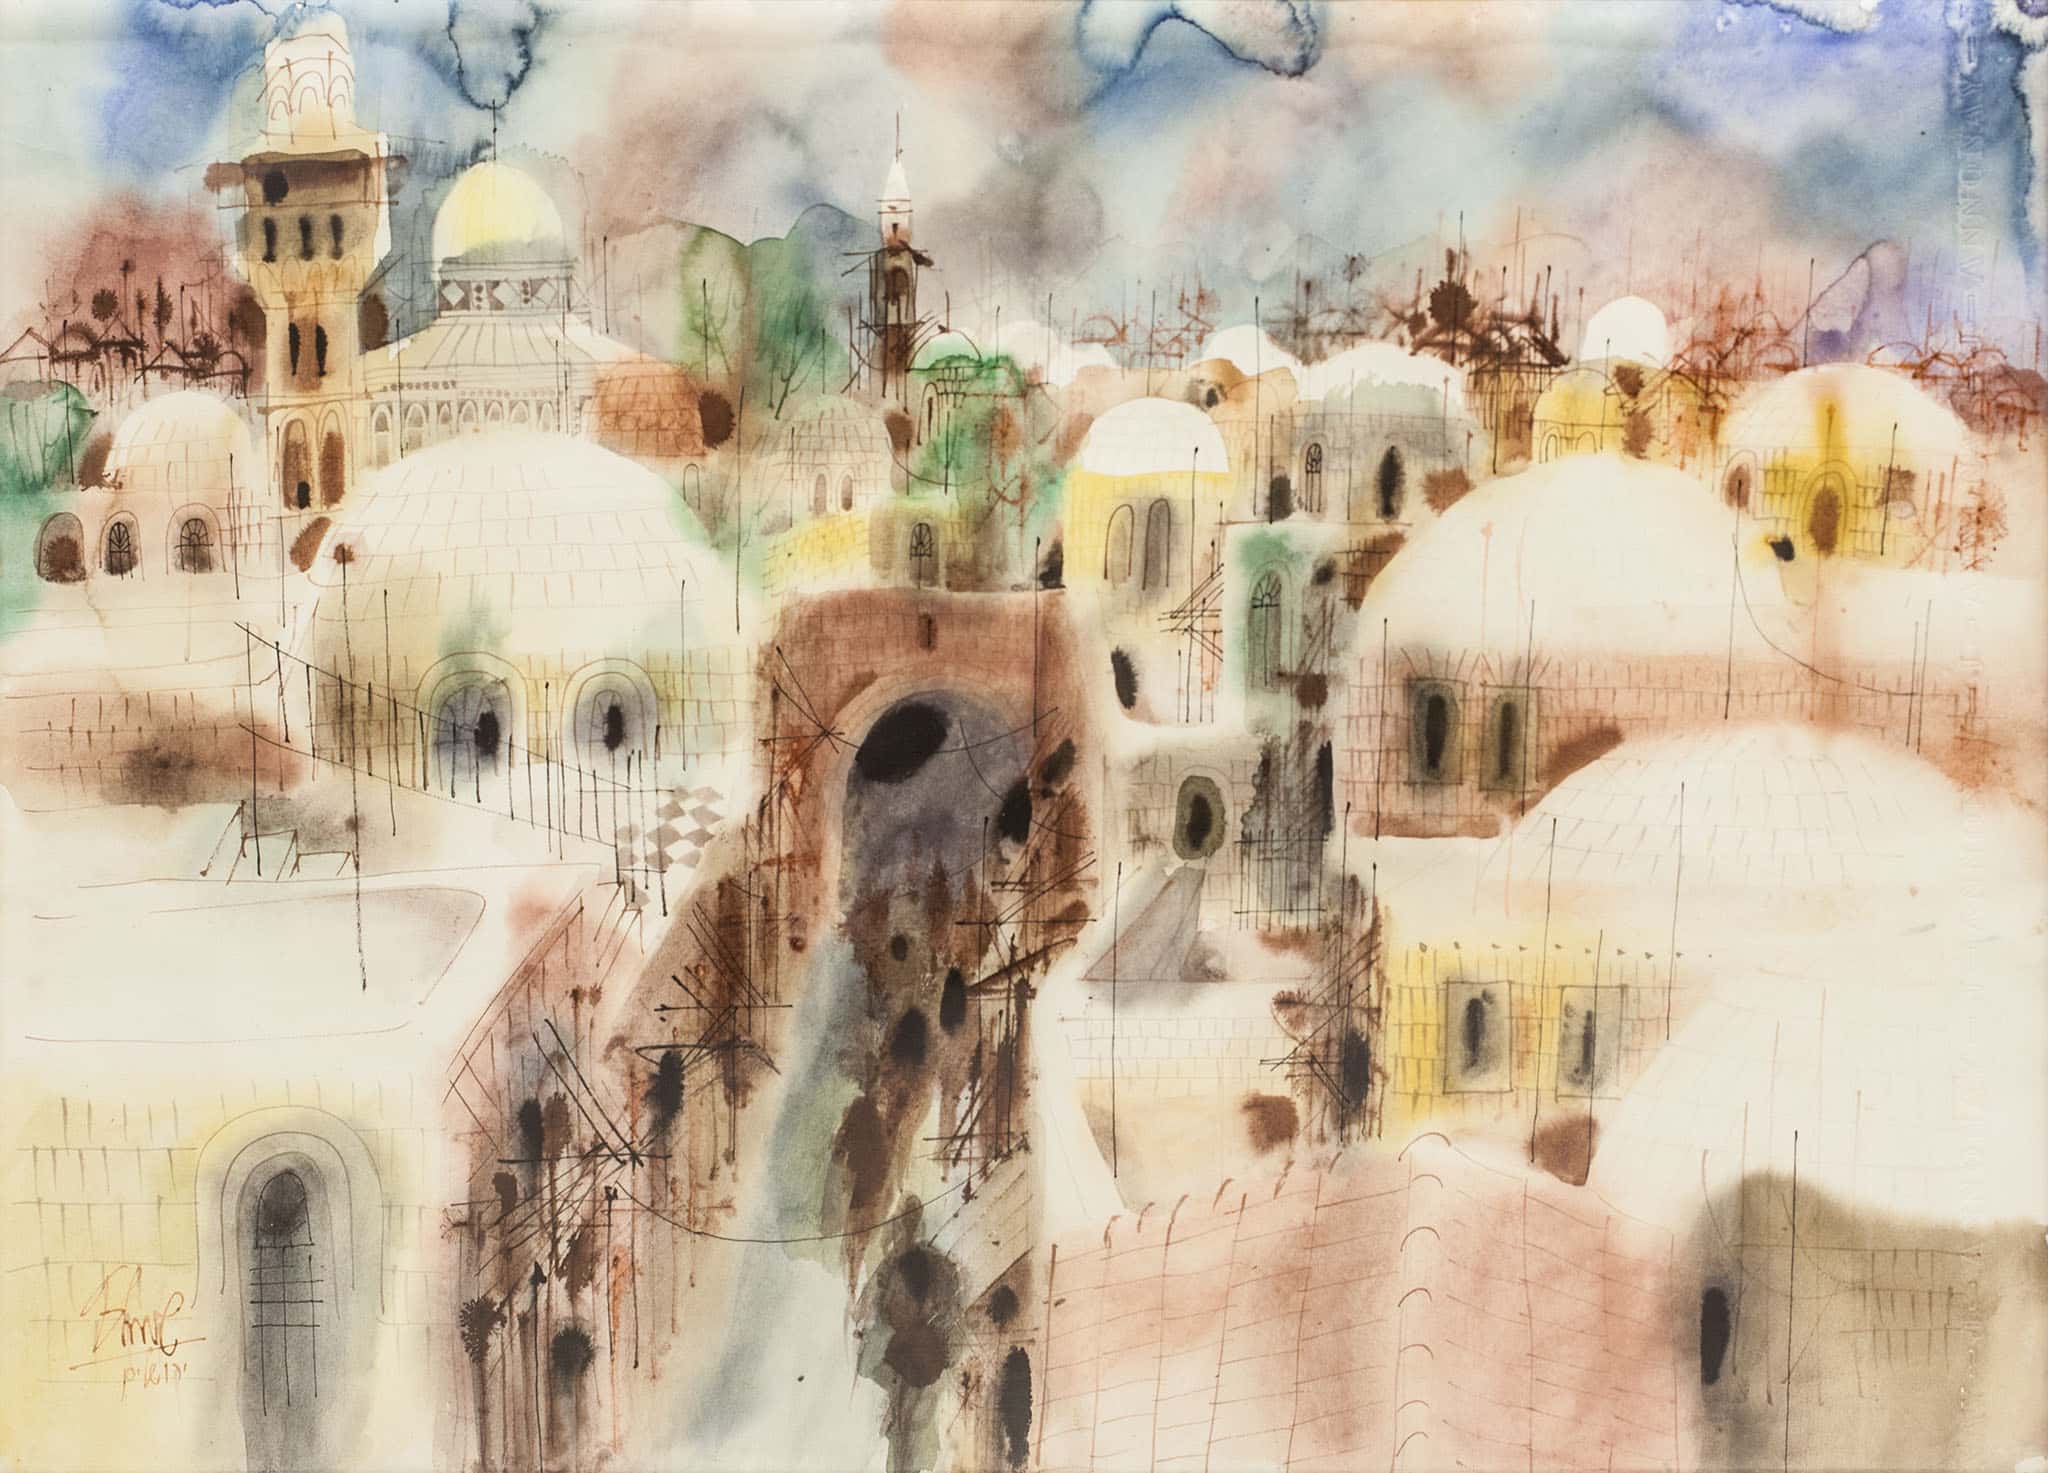 שמואל כץ, "ירושלים", אקוורל על נייר, 70x50 ס"מ